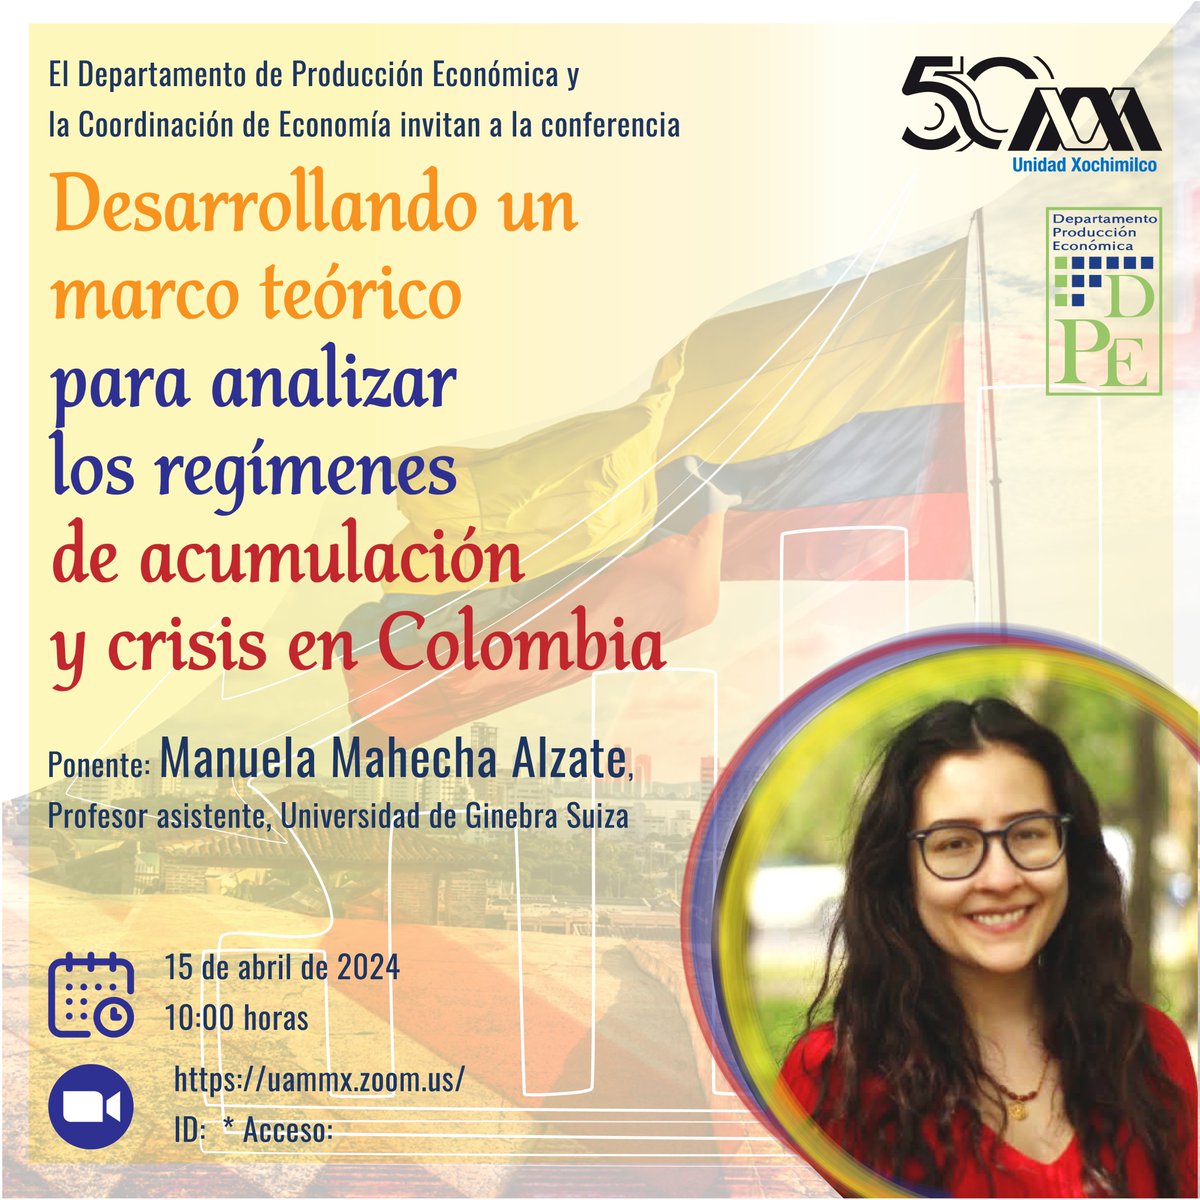 Conferencia: Desarrollando un marco teórico para analizar los regímenes de acumulación y crisis en Colombia. . 🗓️ ABRIL 15, 10:00 H 🌐 uammx.zoom.us/j/86106279774 ▶ ID: 861 0627 9774 * Acceso: 721374 📍 Unidad Xochimilco . #SoyUAM #UAM50 #UAMInternacional